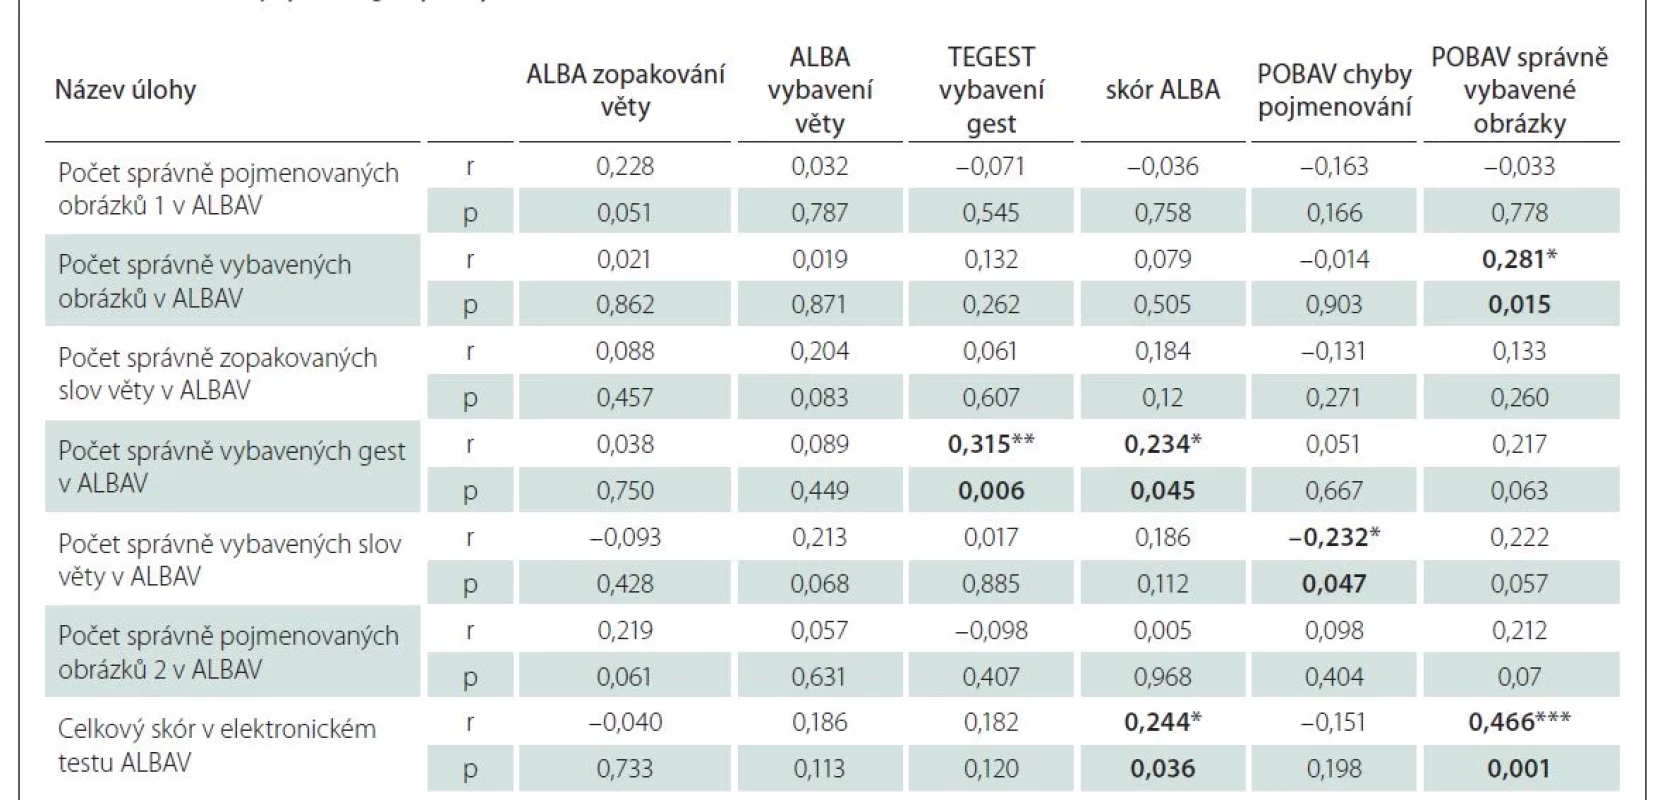 Spearmanovy korelace mezi výsledky elektronického testu ALBAV a výsledky testů ALBA a POBAV při osobním vyšetření
u 74 osob s neuropsychologickým vyšetřením.